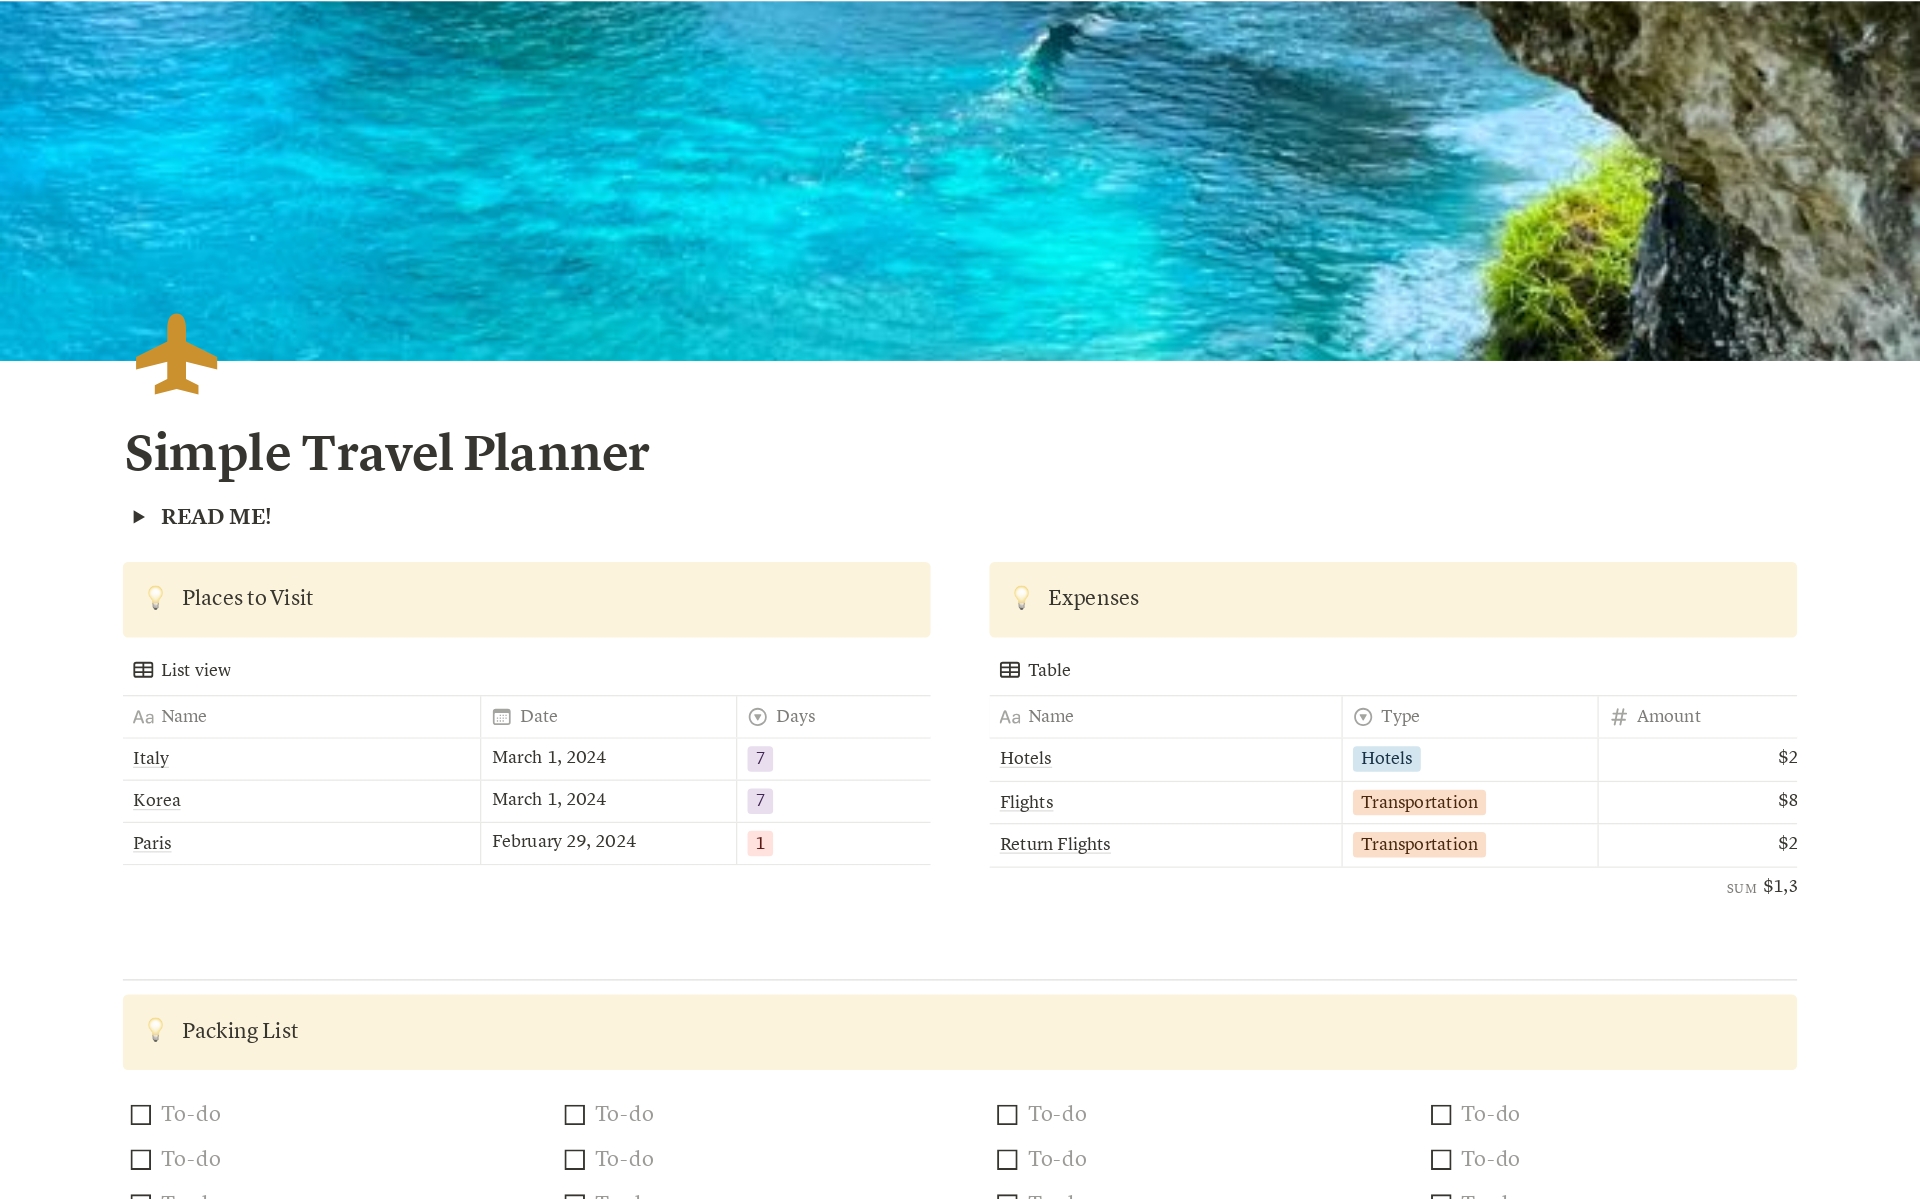 En förhandsgranskning av mallen för Travel Planner